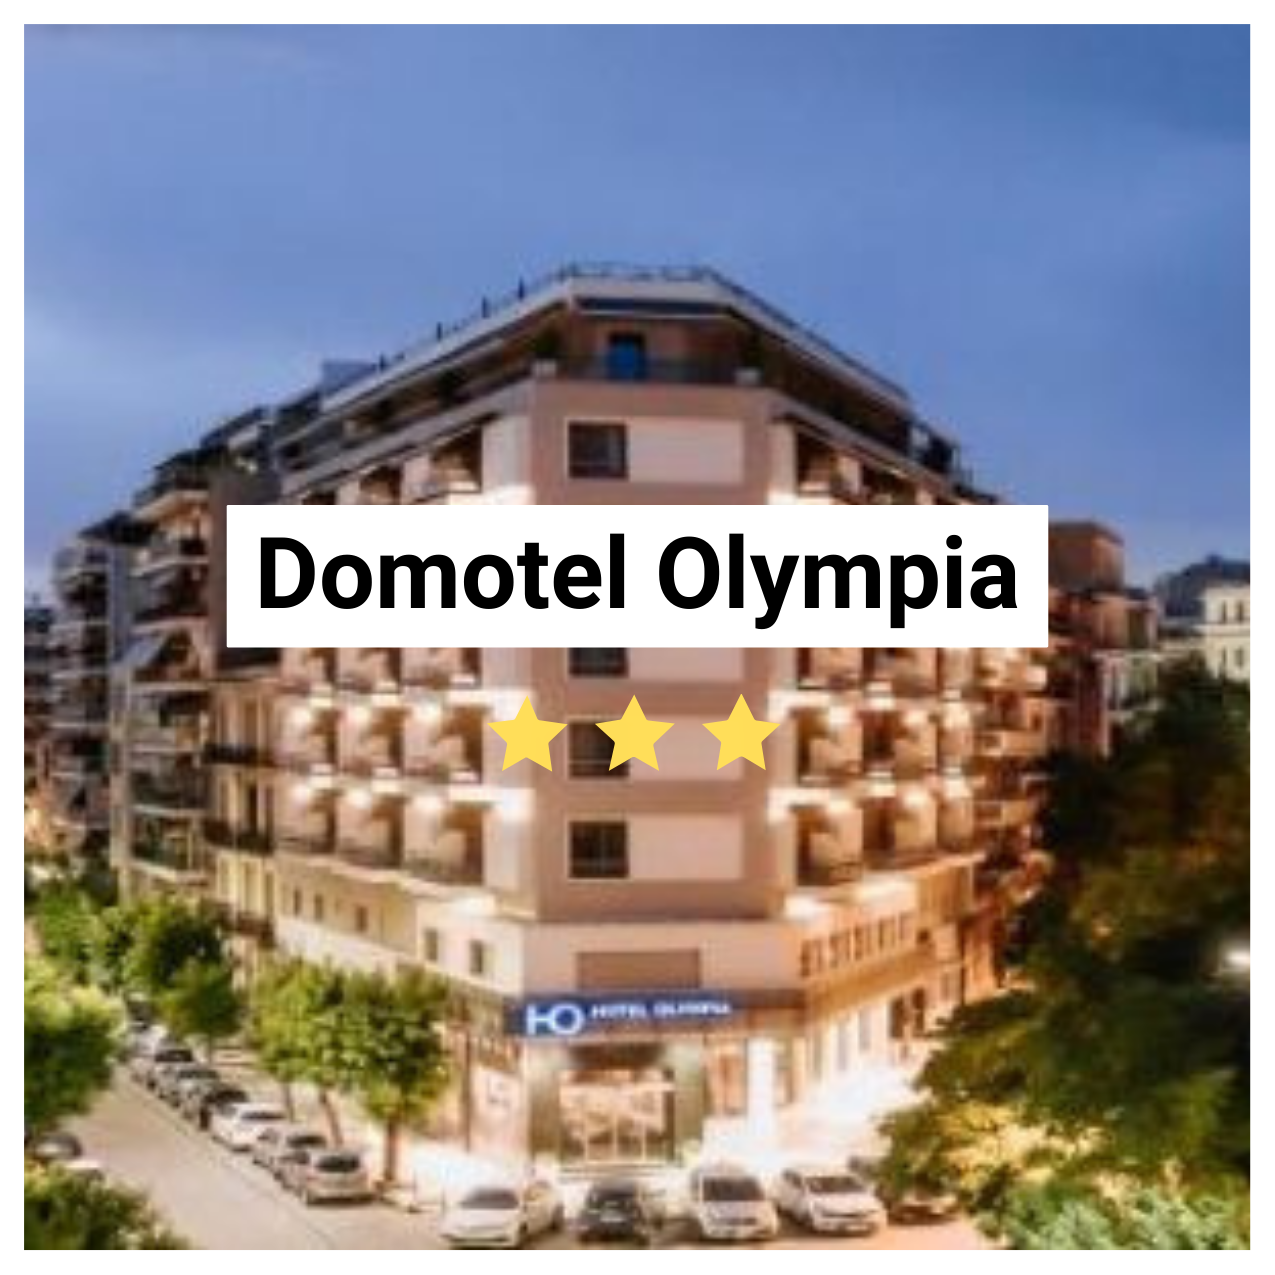 Domotel Olympia Hotel Image. 